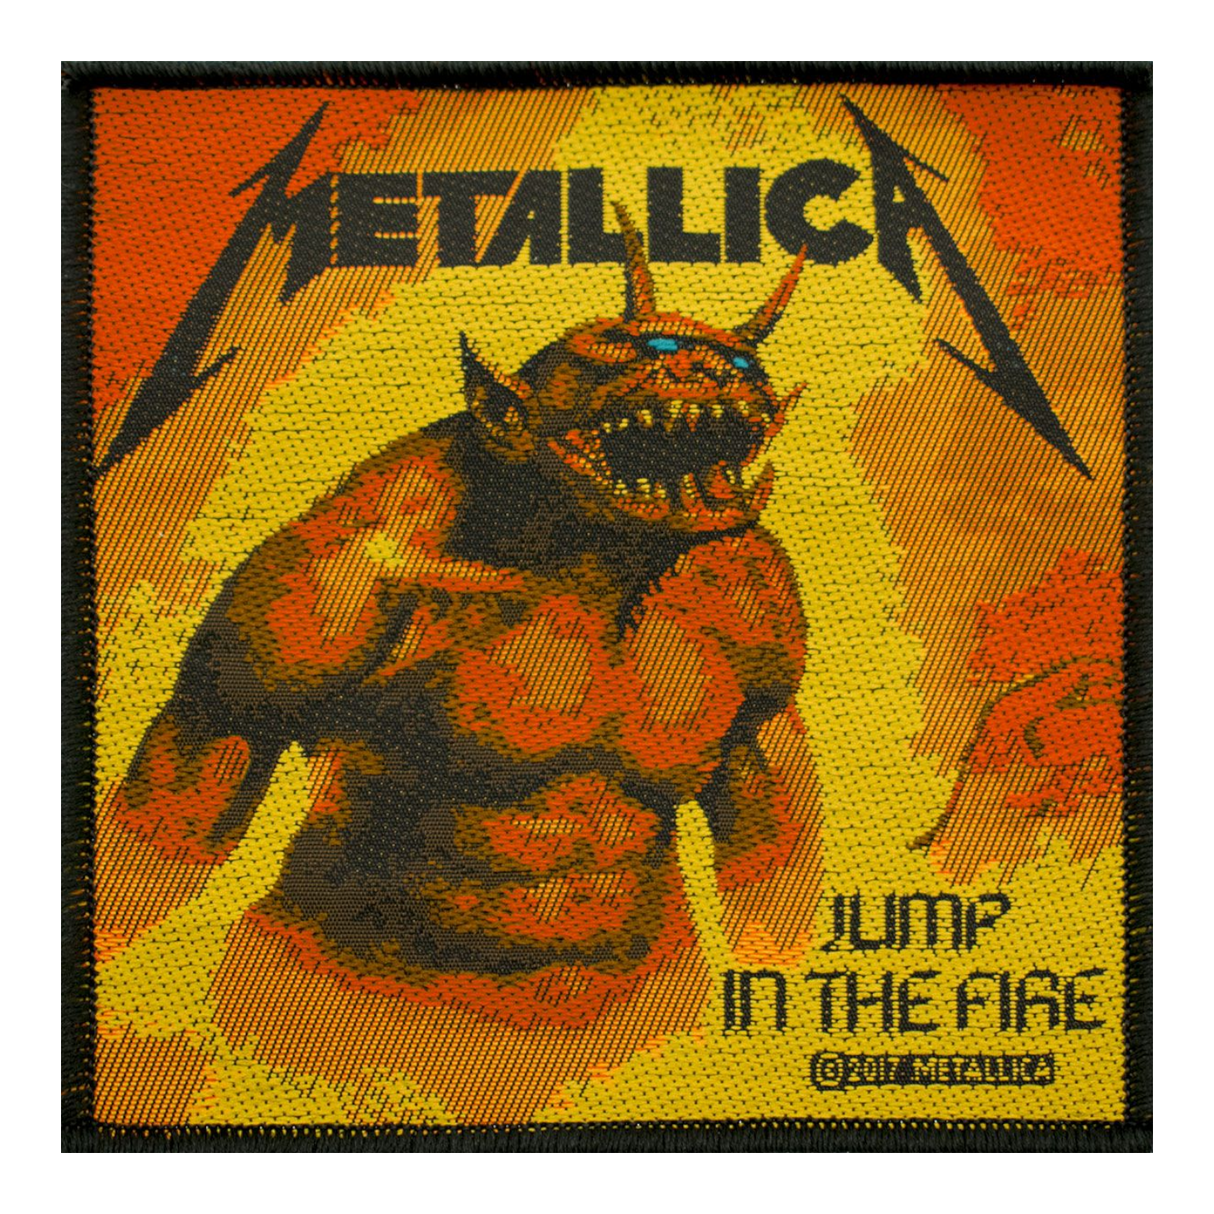 Patch Metallica - Spring in het vuur